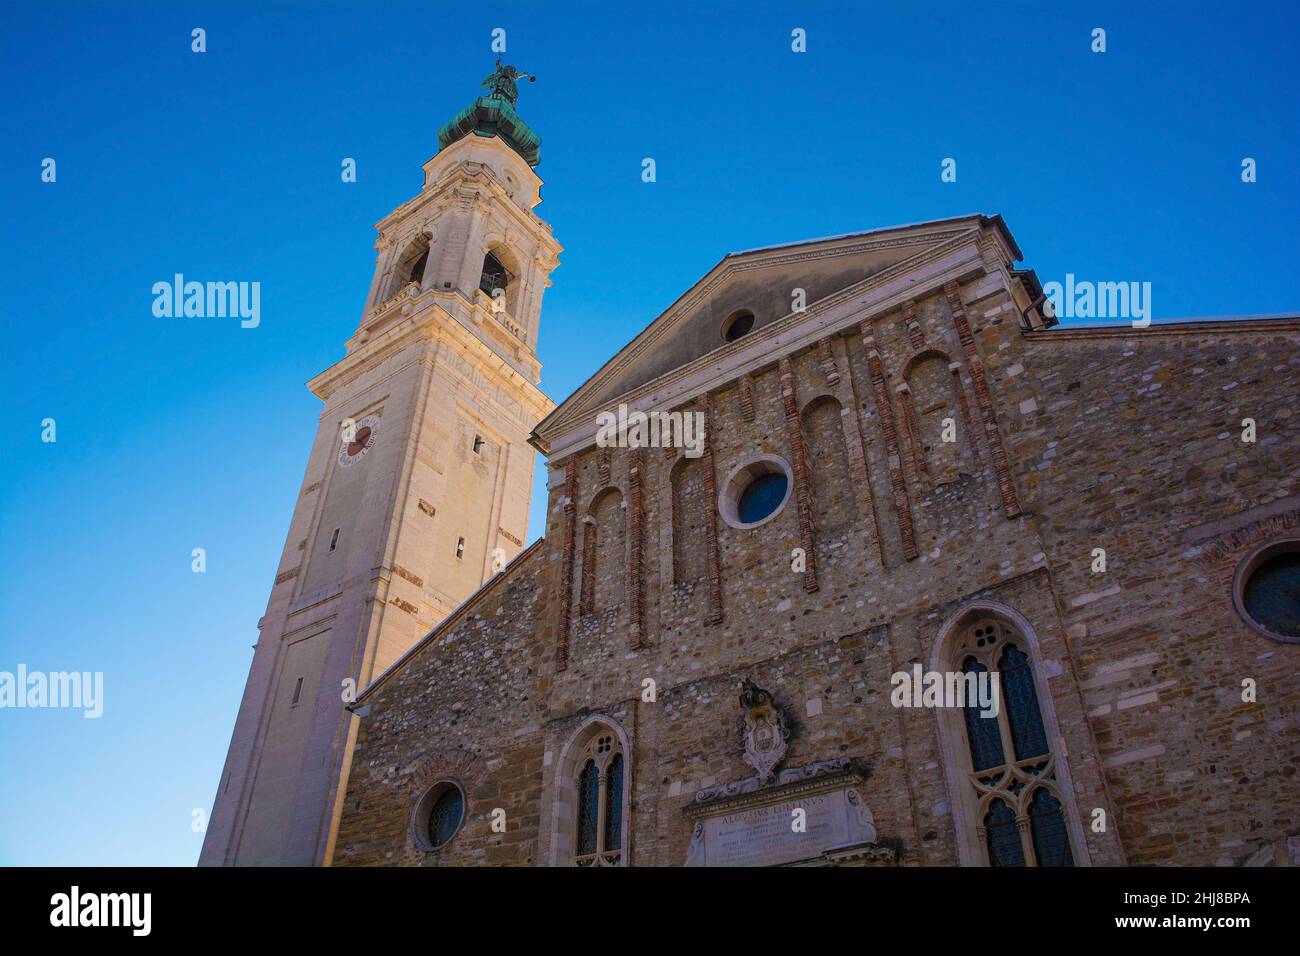 La cathédrale historique de la ville italienne de Belluno, région de la Vénétie.Ce duomo baroque datant du 18th siècle est connu sous le nom de Basilica Cattedrale di San Martino Banque D'Images